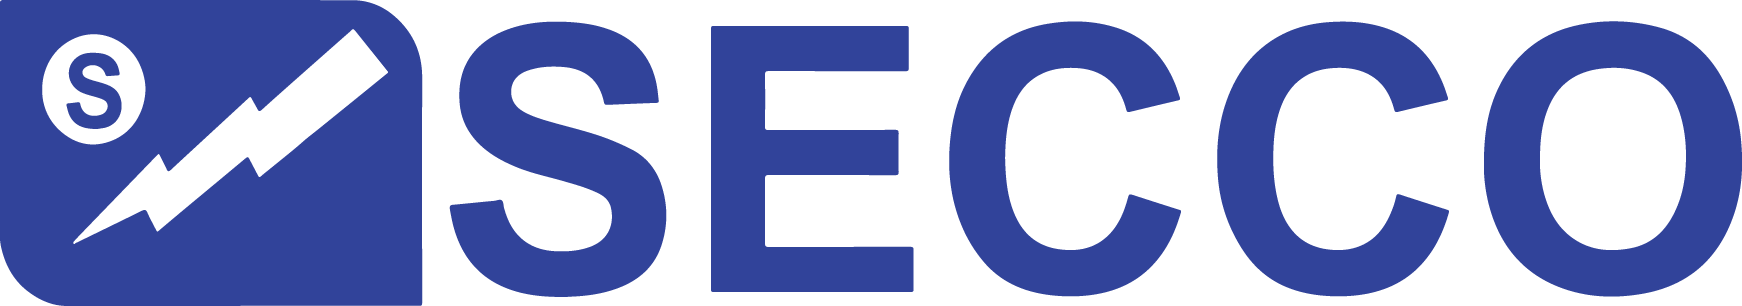 Secco Logo